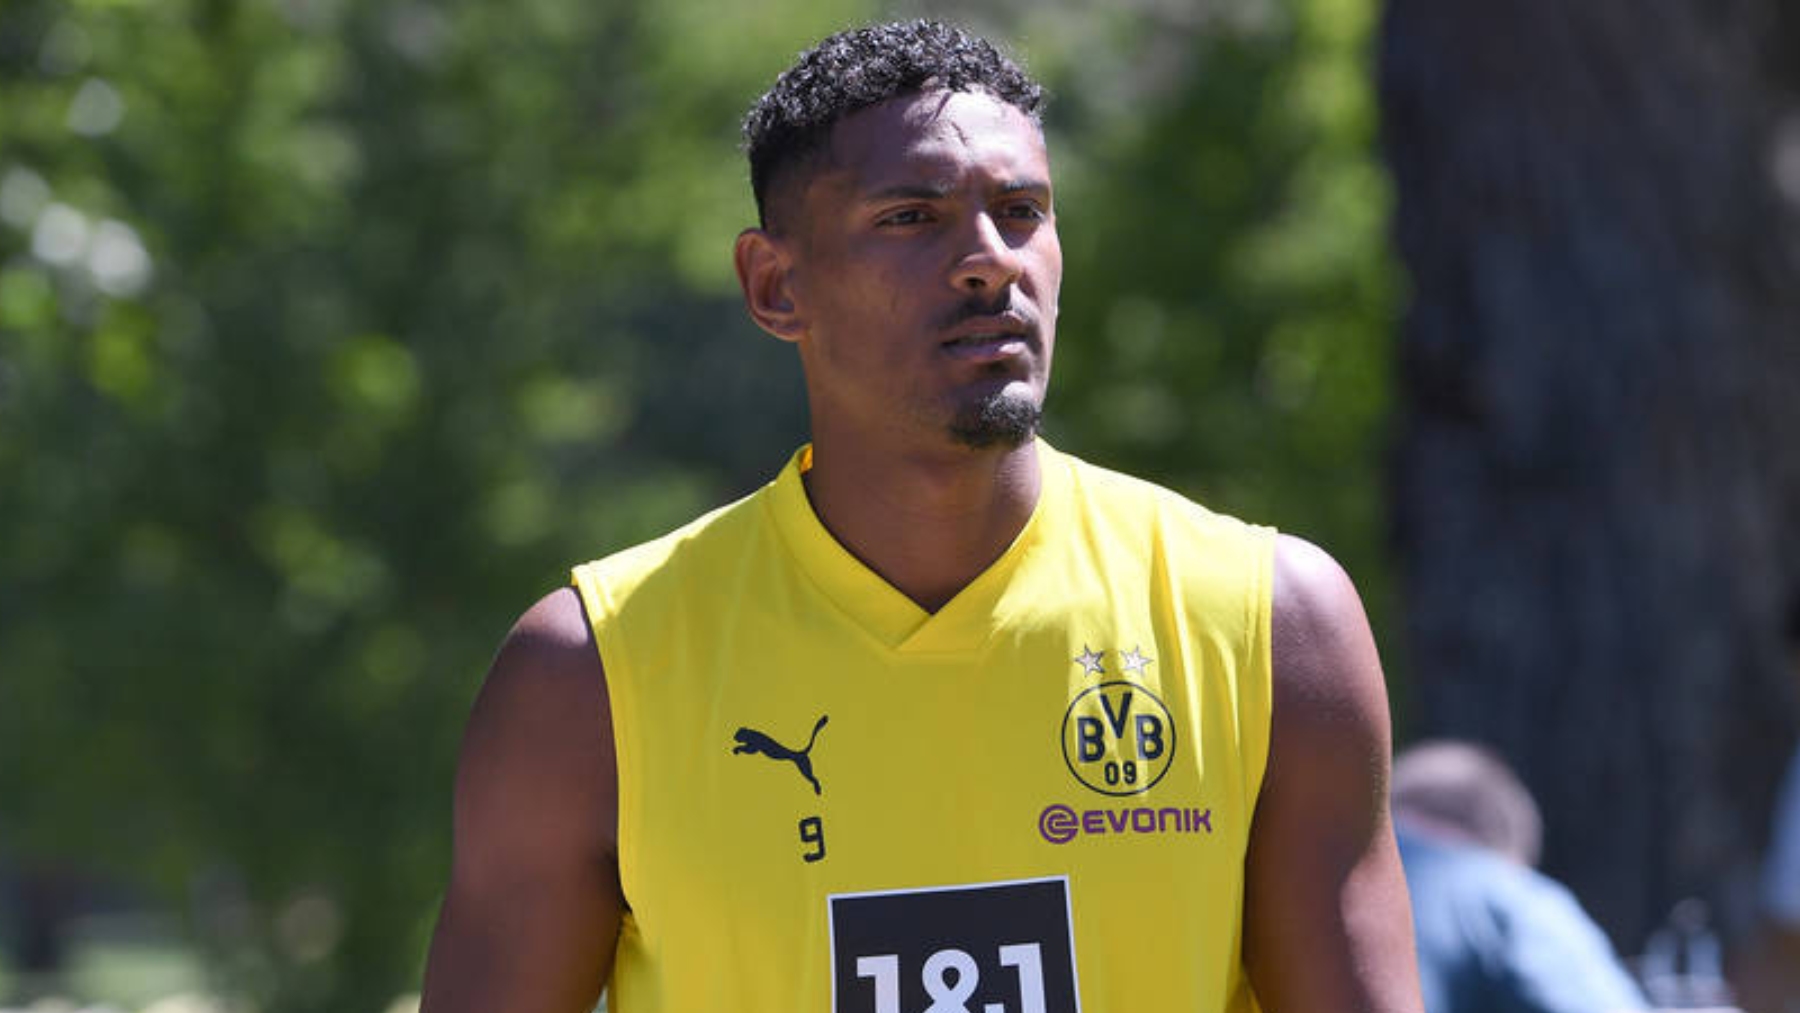 Haller entrenando con el Borussia Dortmund. (BVB)